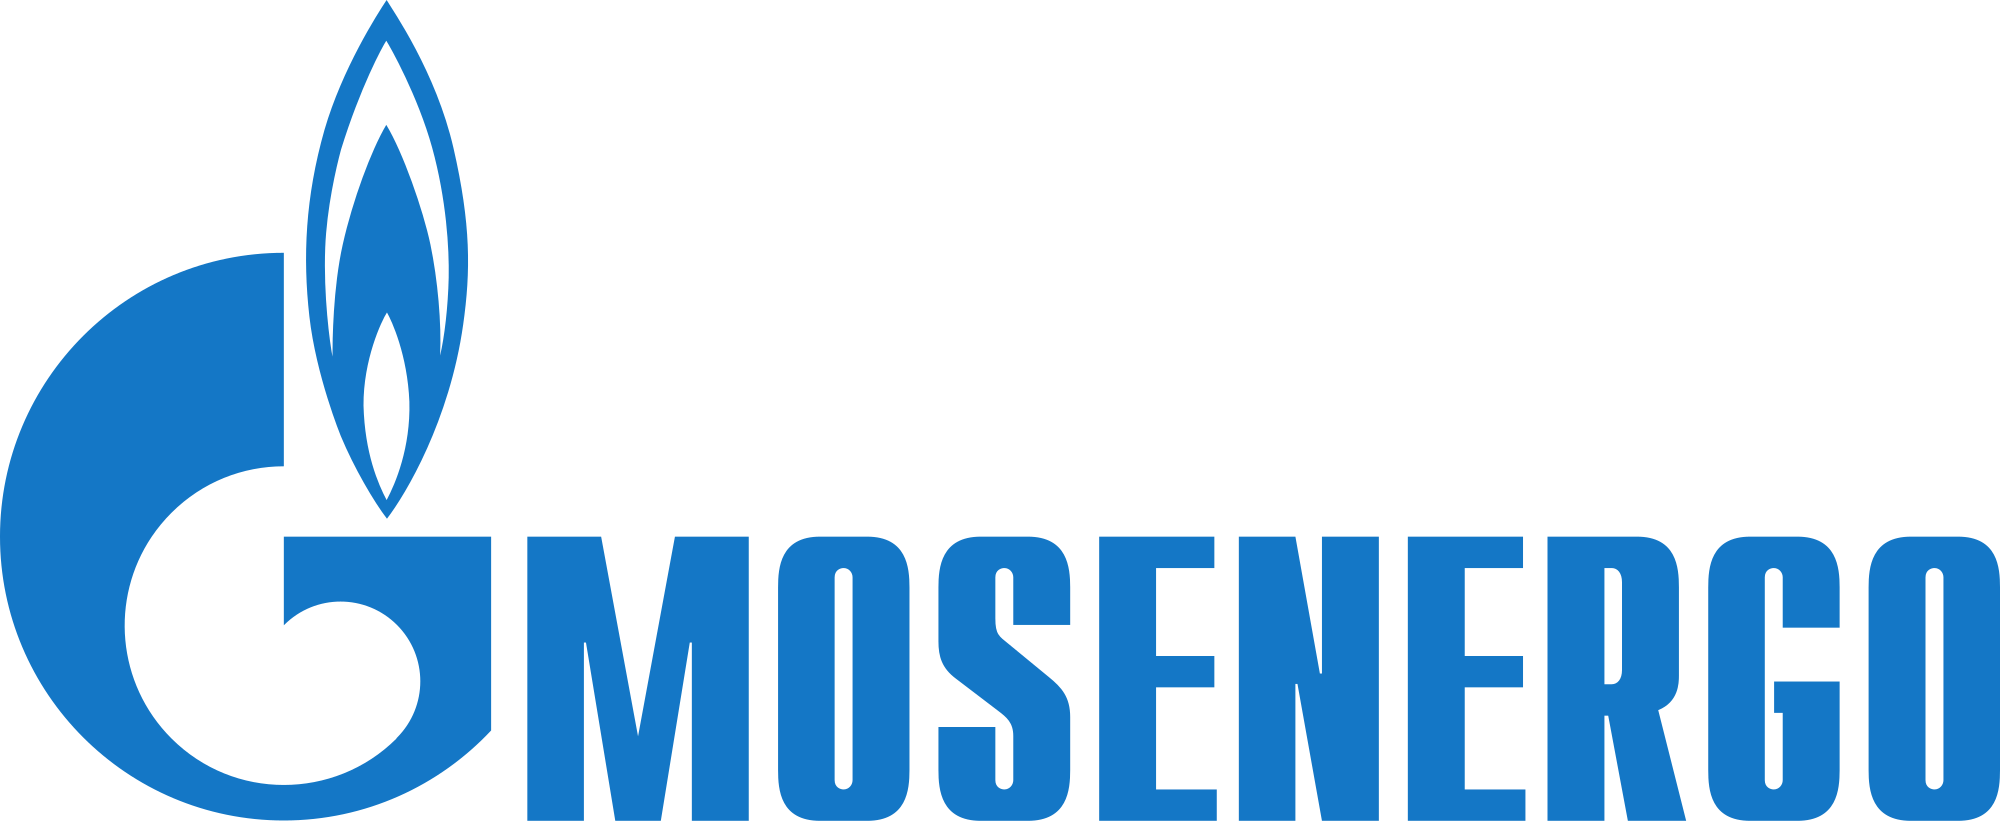 Mosenergo